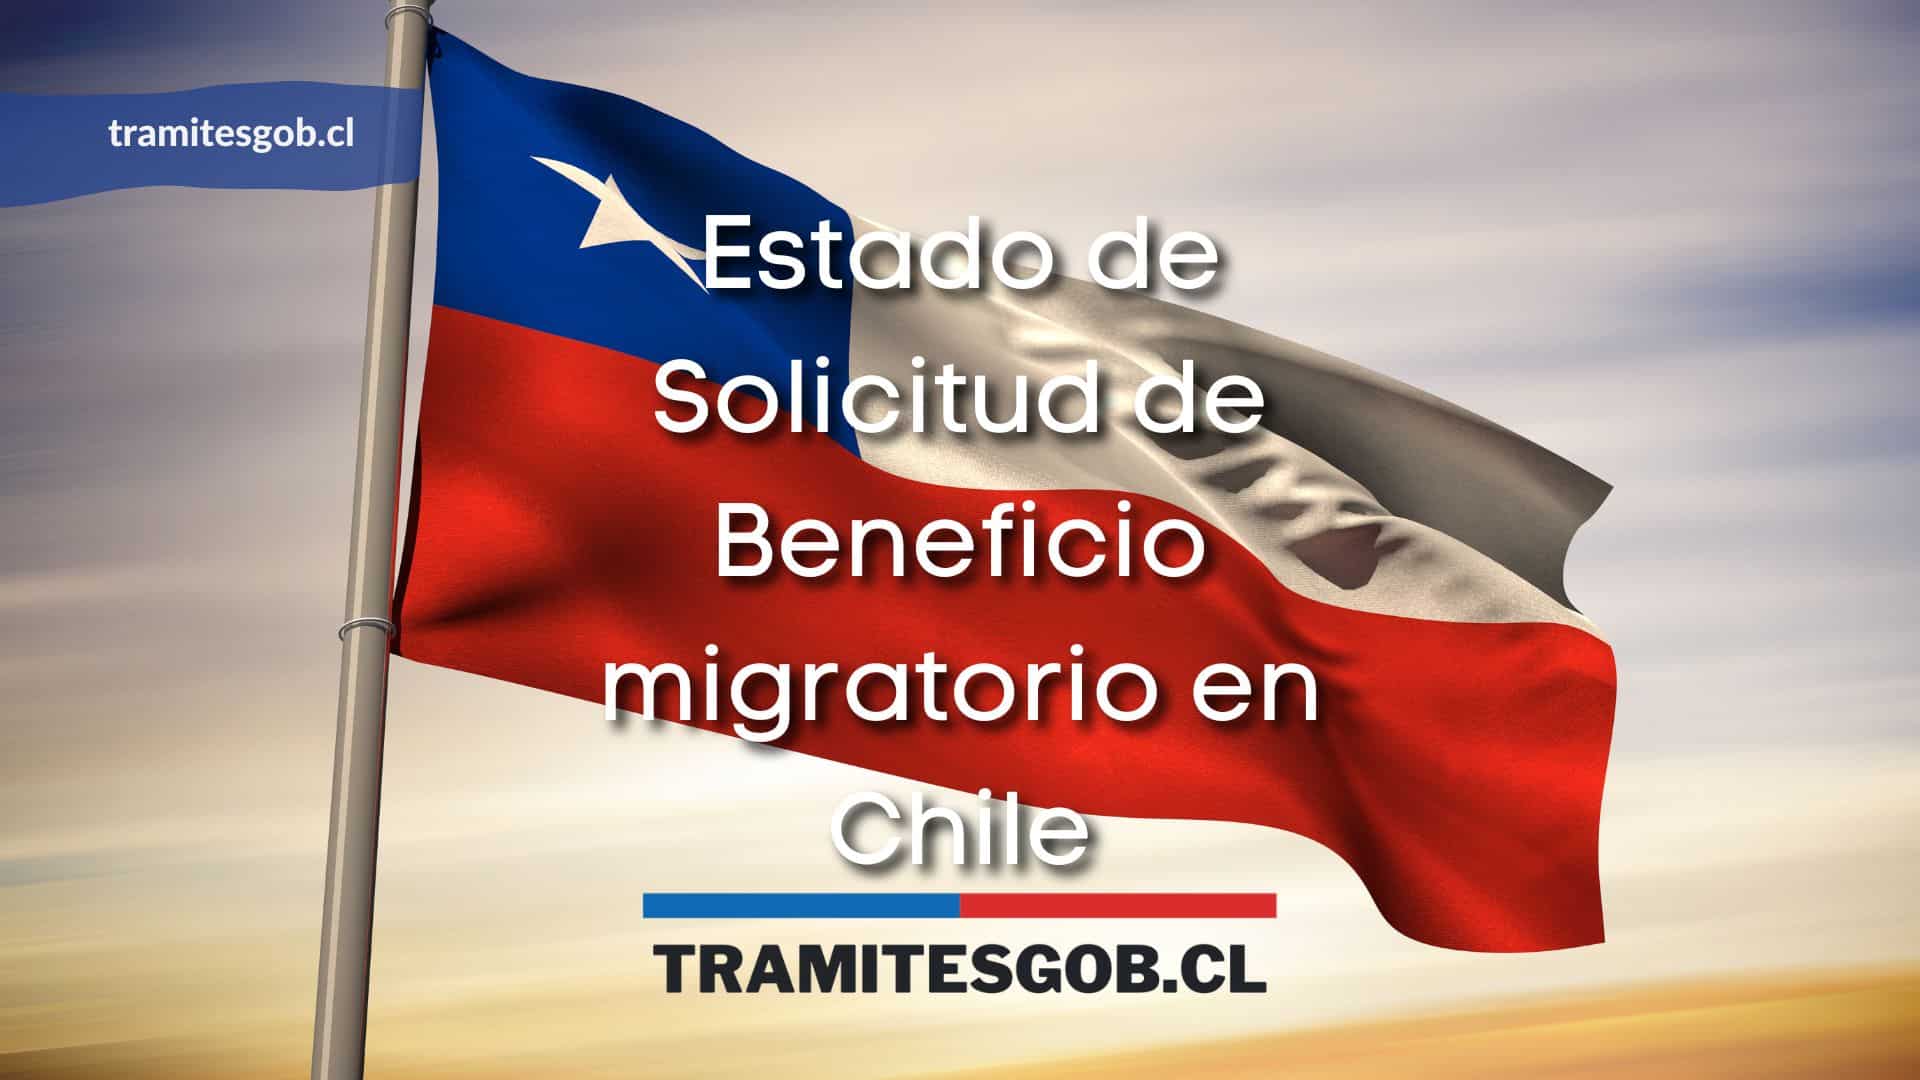 Estado de Solicitud de Beneficio migratorio en Chile